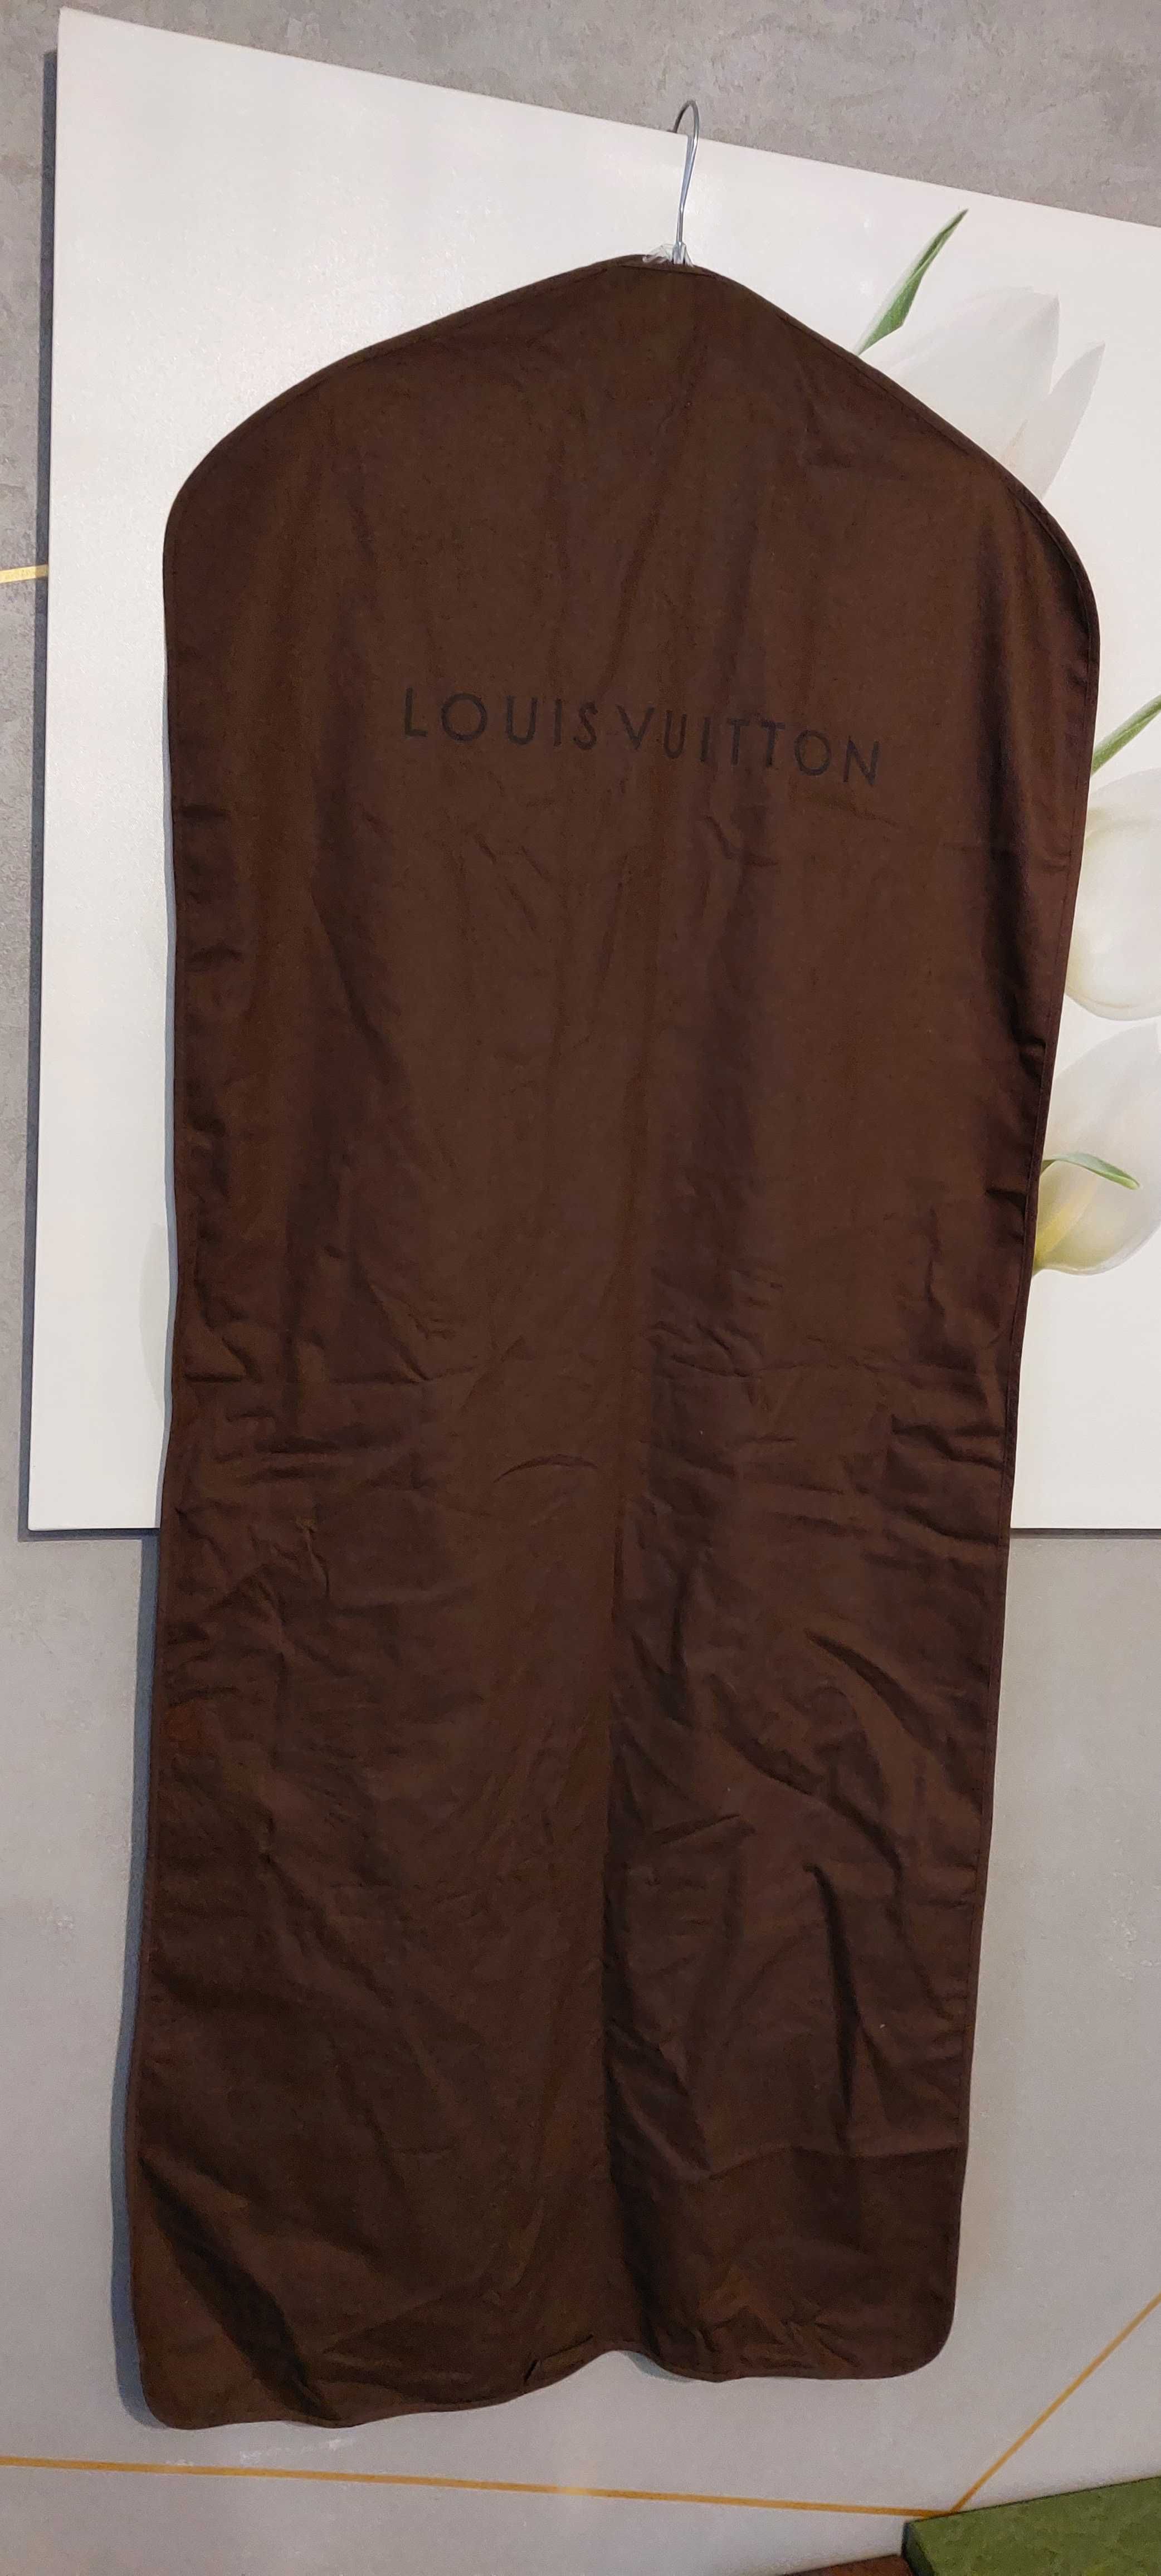 Pokrowiec na ubrania LOUIS VUITTON-brązowy, oryginalny